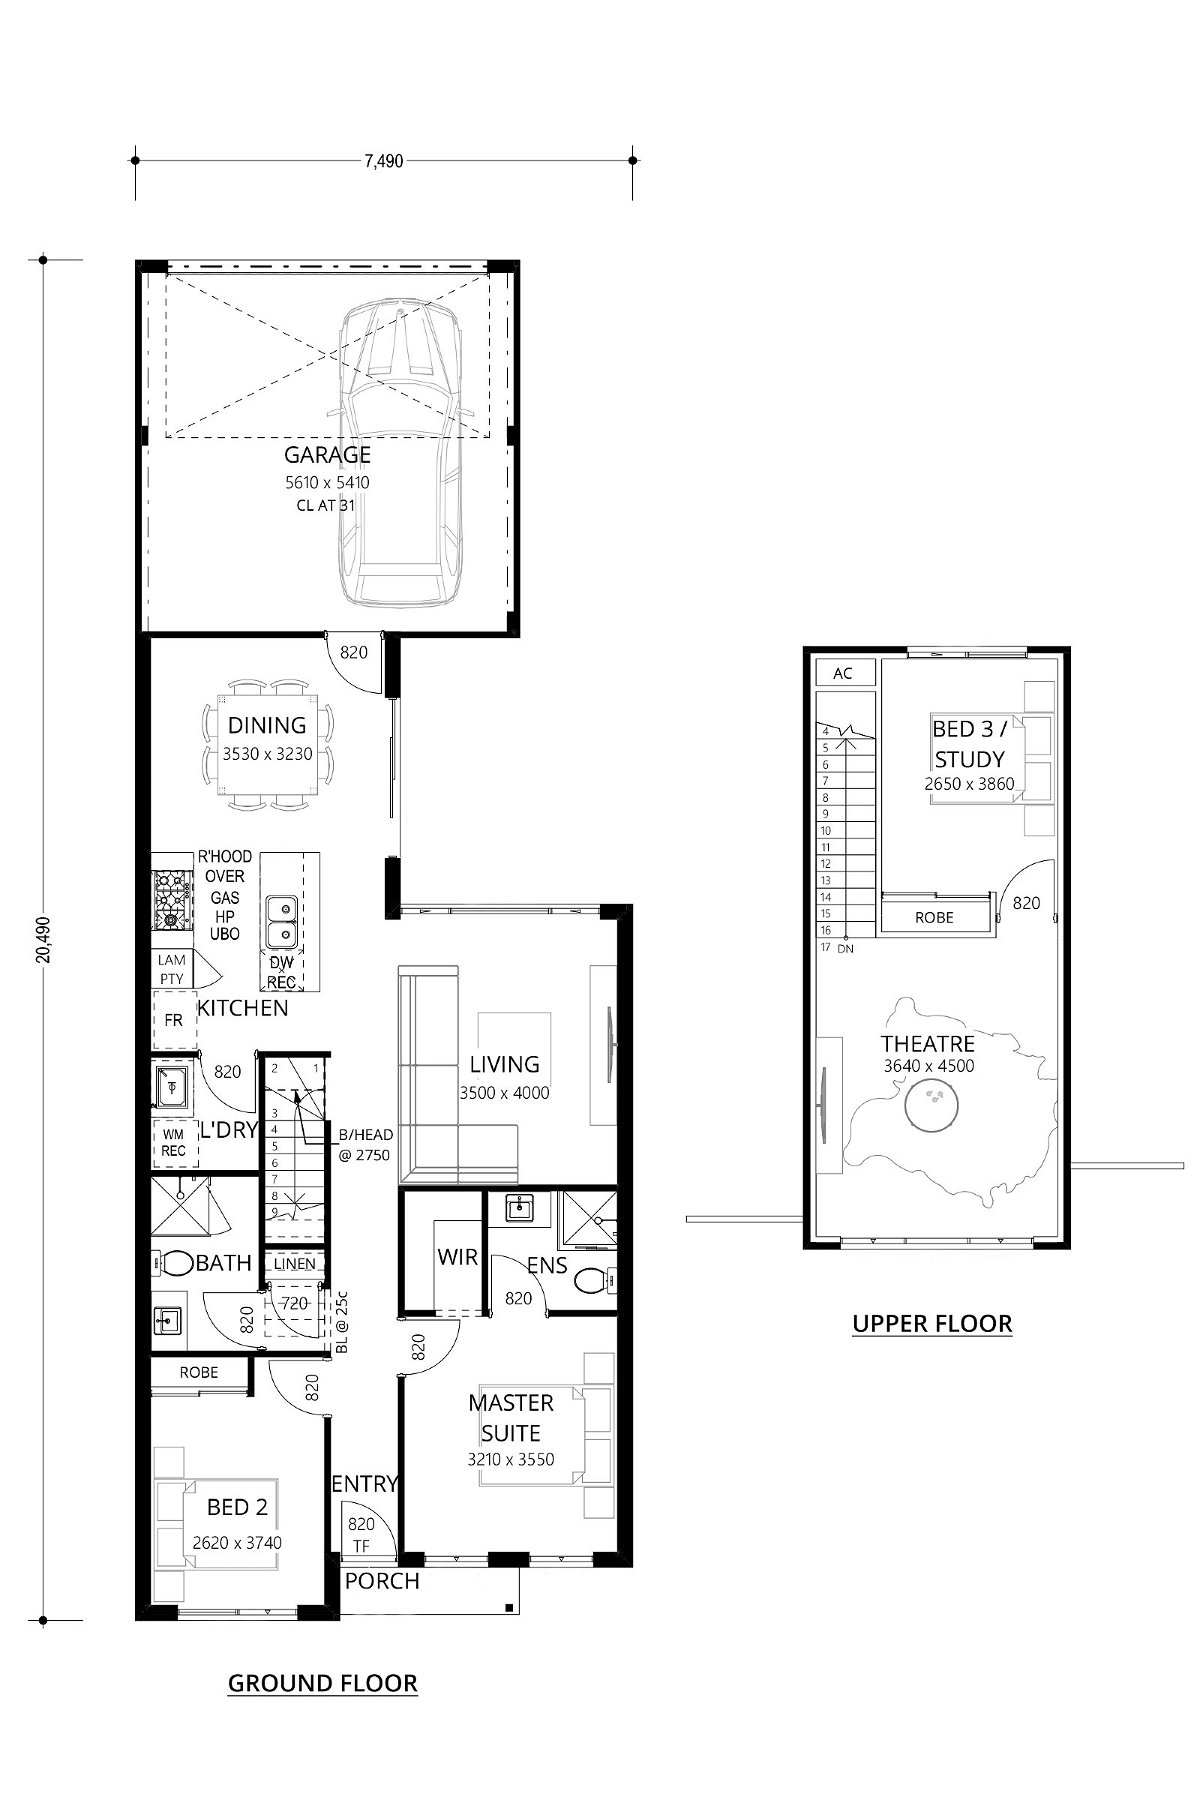 Residential Attitudes - Still Disco - Floorplan - Still Disco Floorplan Website